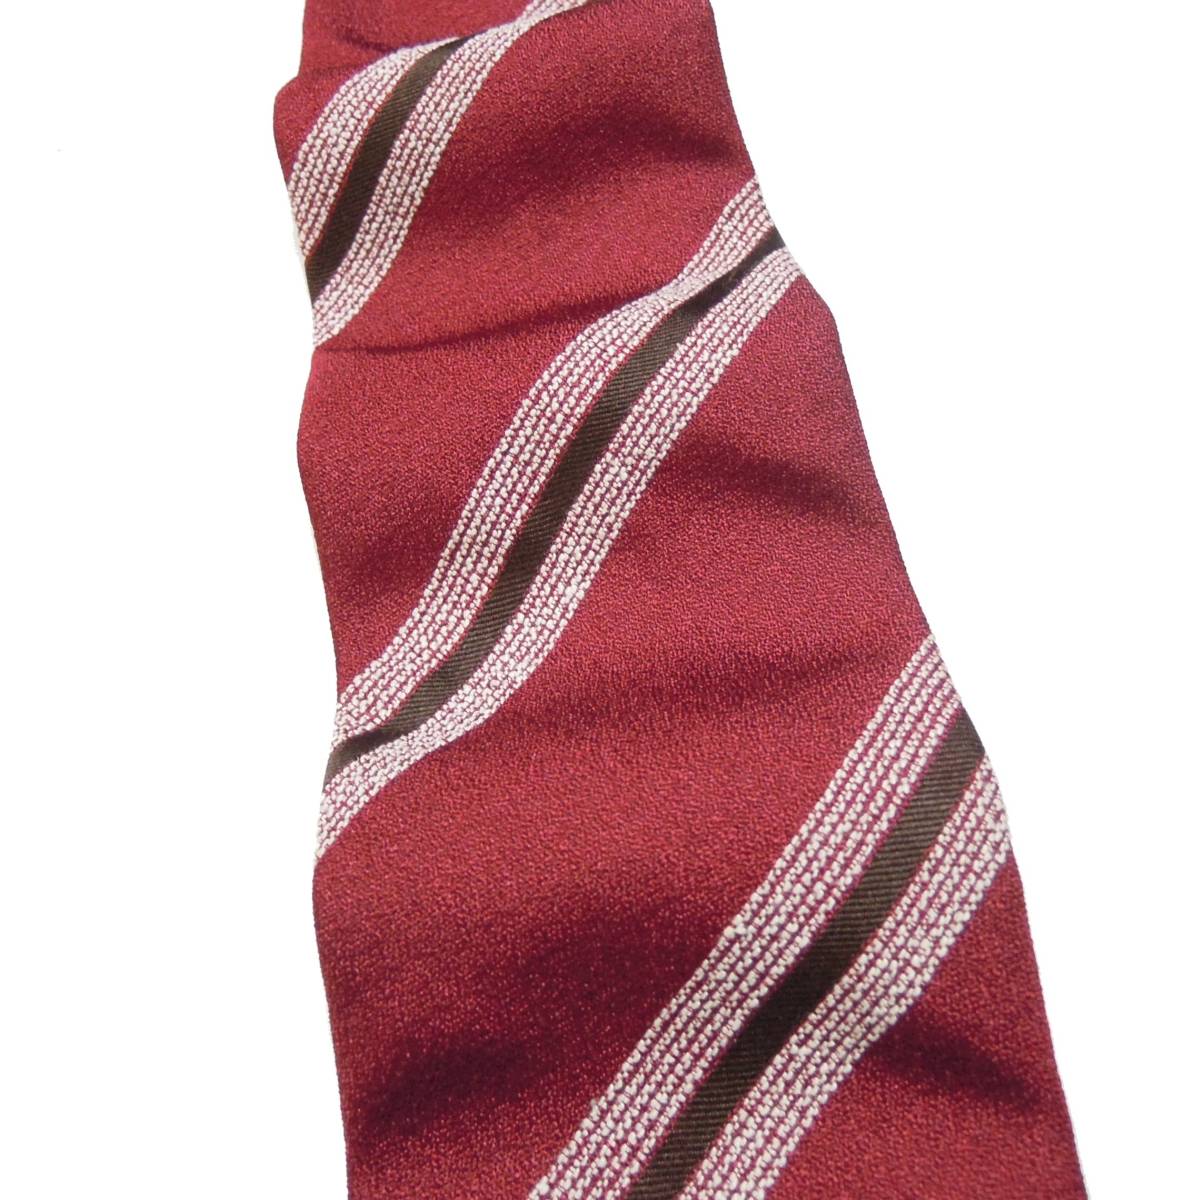  новый товар обычная цена 21,600 иен Stefanobigi / стерео fanobiji шелк полоса галстук -тактный lasbrugo покупка темно-красный × белый × Brown Италия производства 